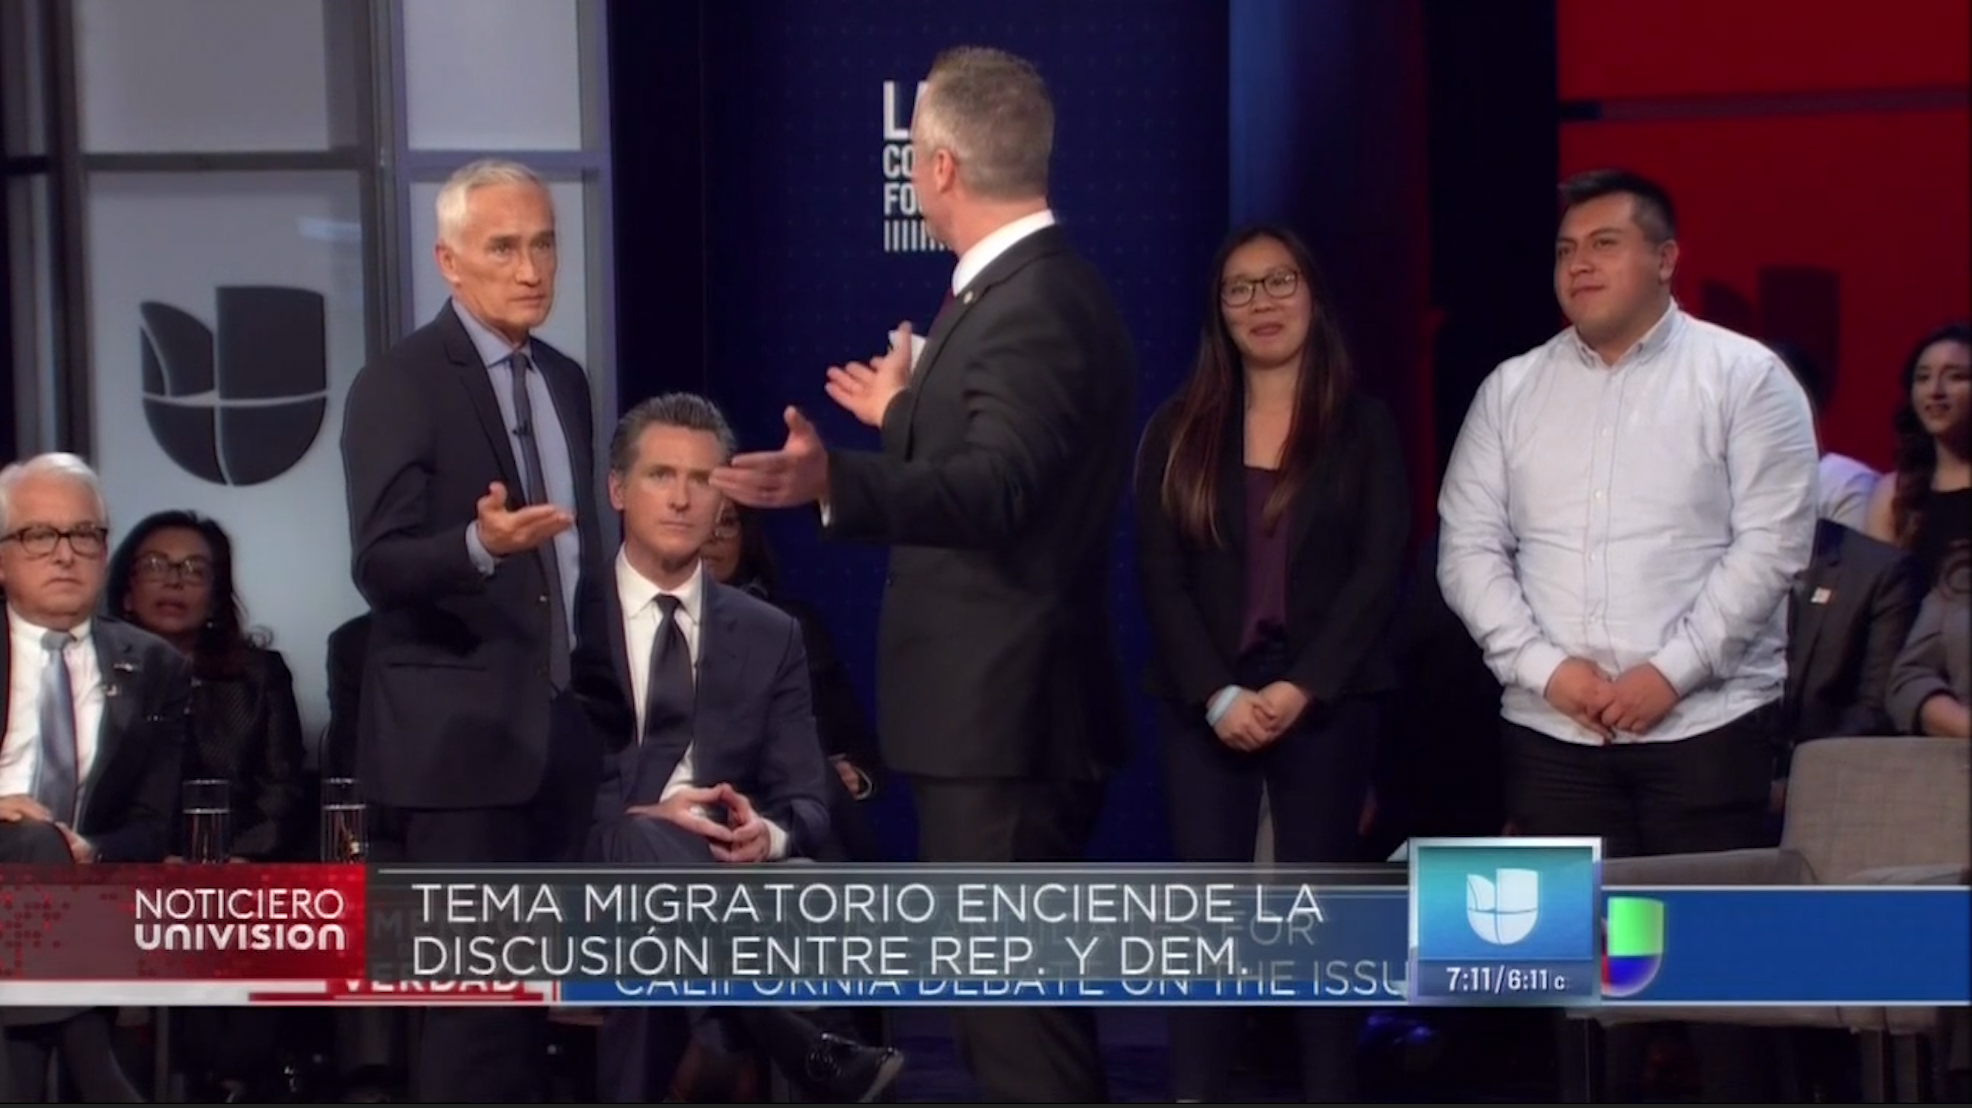 Periodista Jorge Ramos Pone En Aprietos A Candidato Republicano Al Hacerle Pregunta Sobre Inmigrantes